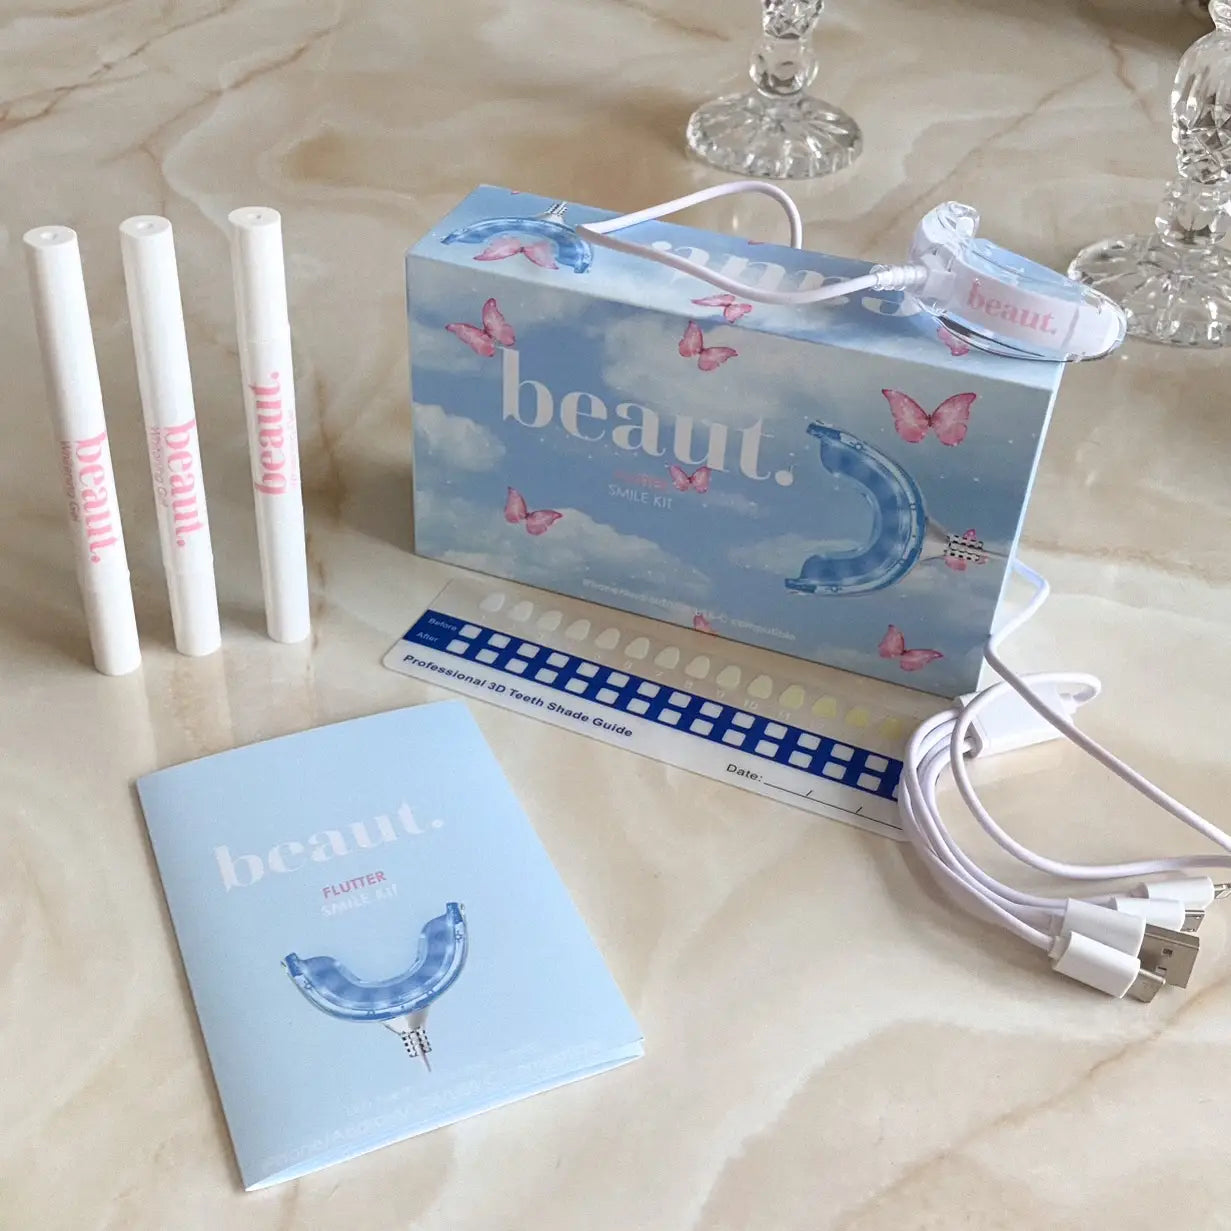 Flutter Smile Kit by beaut.